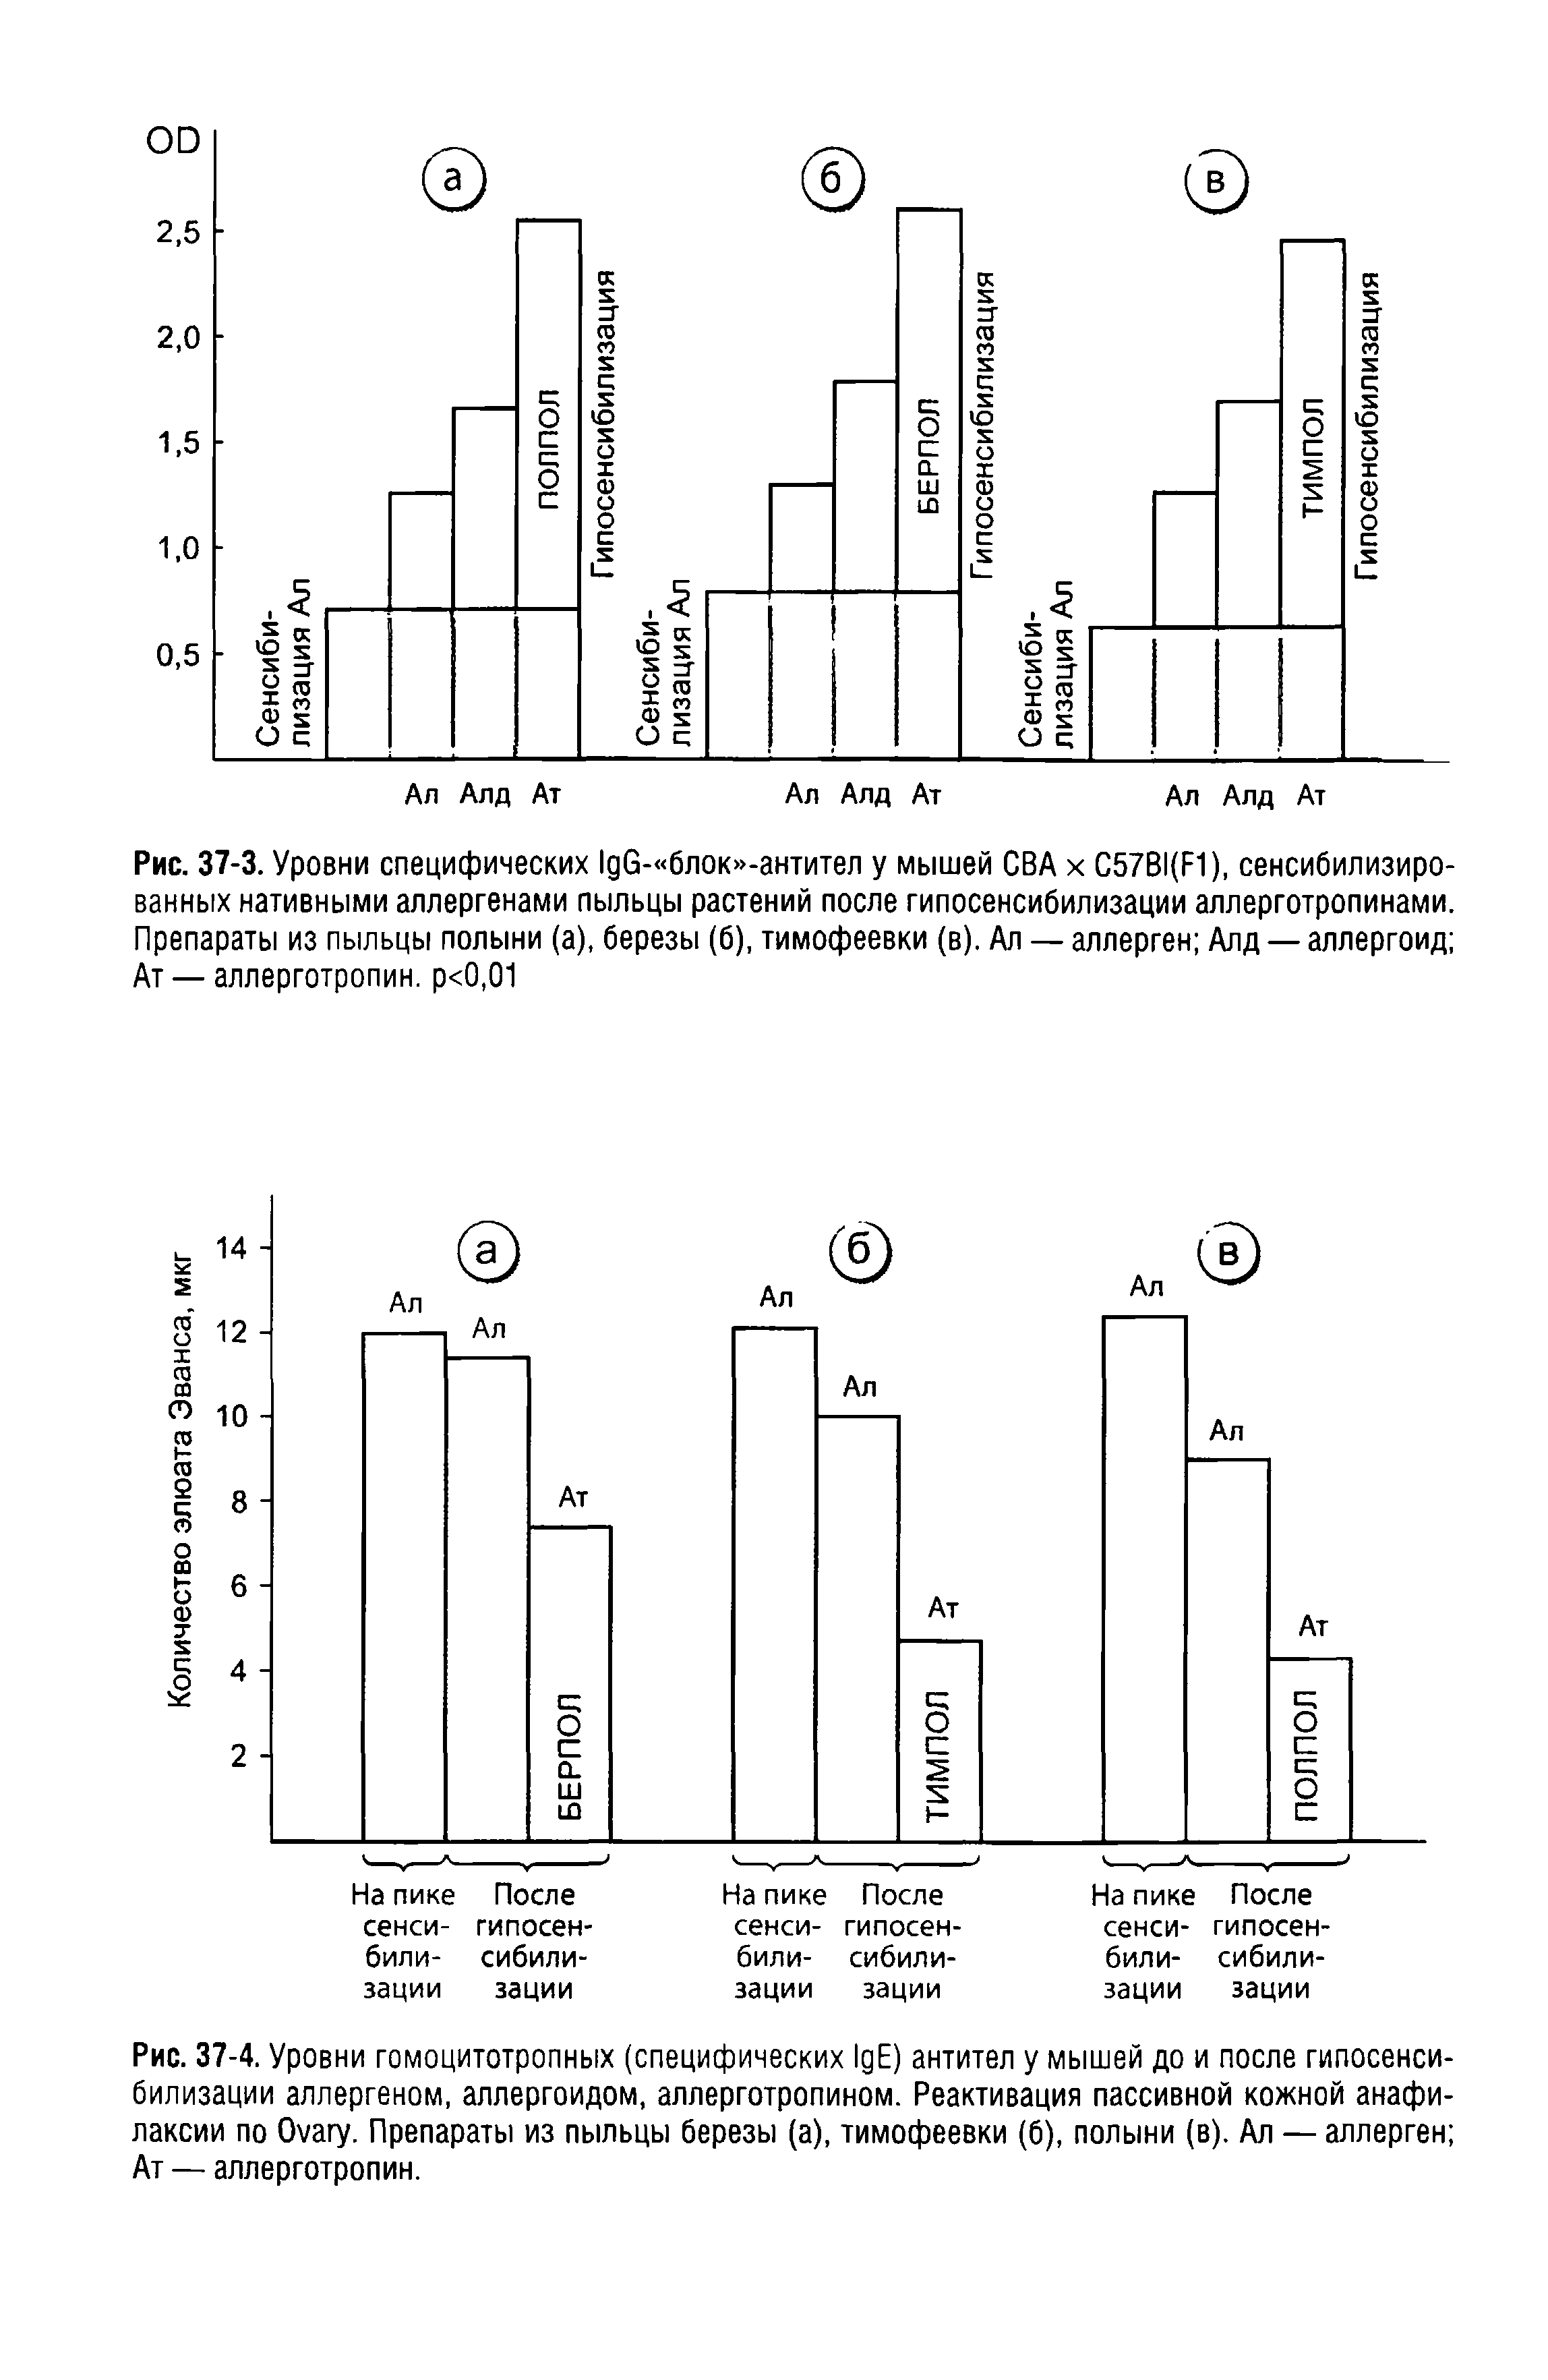 Рис. 37-4. Уровни гомоцитотропных (специфических I E) антител у мышей до и после гипосенсибилизации аллергеном, аллергоидом, аллерготропином. Реактивация пассивной кожной анафилаксии по O . Препараты из пыльцы березы (а), тимофеевки (6), полыни (в). Ал — аллерген Ат — аллерготропин.